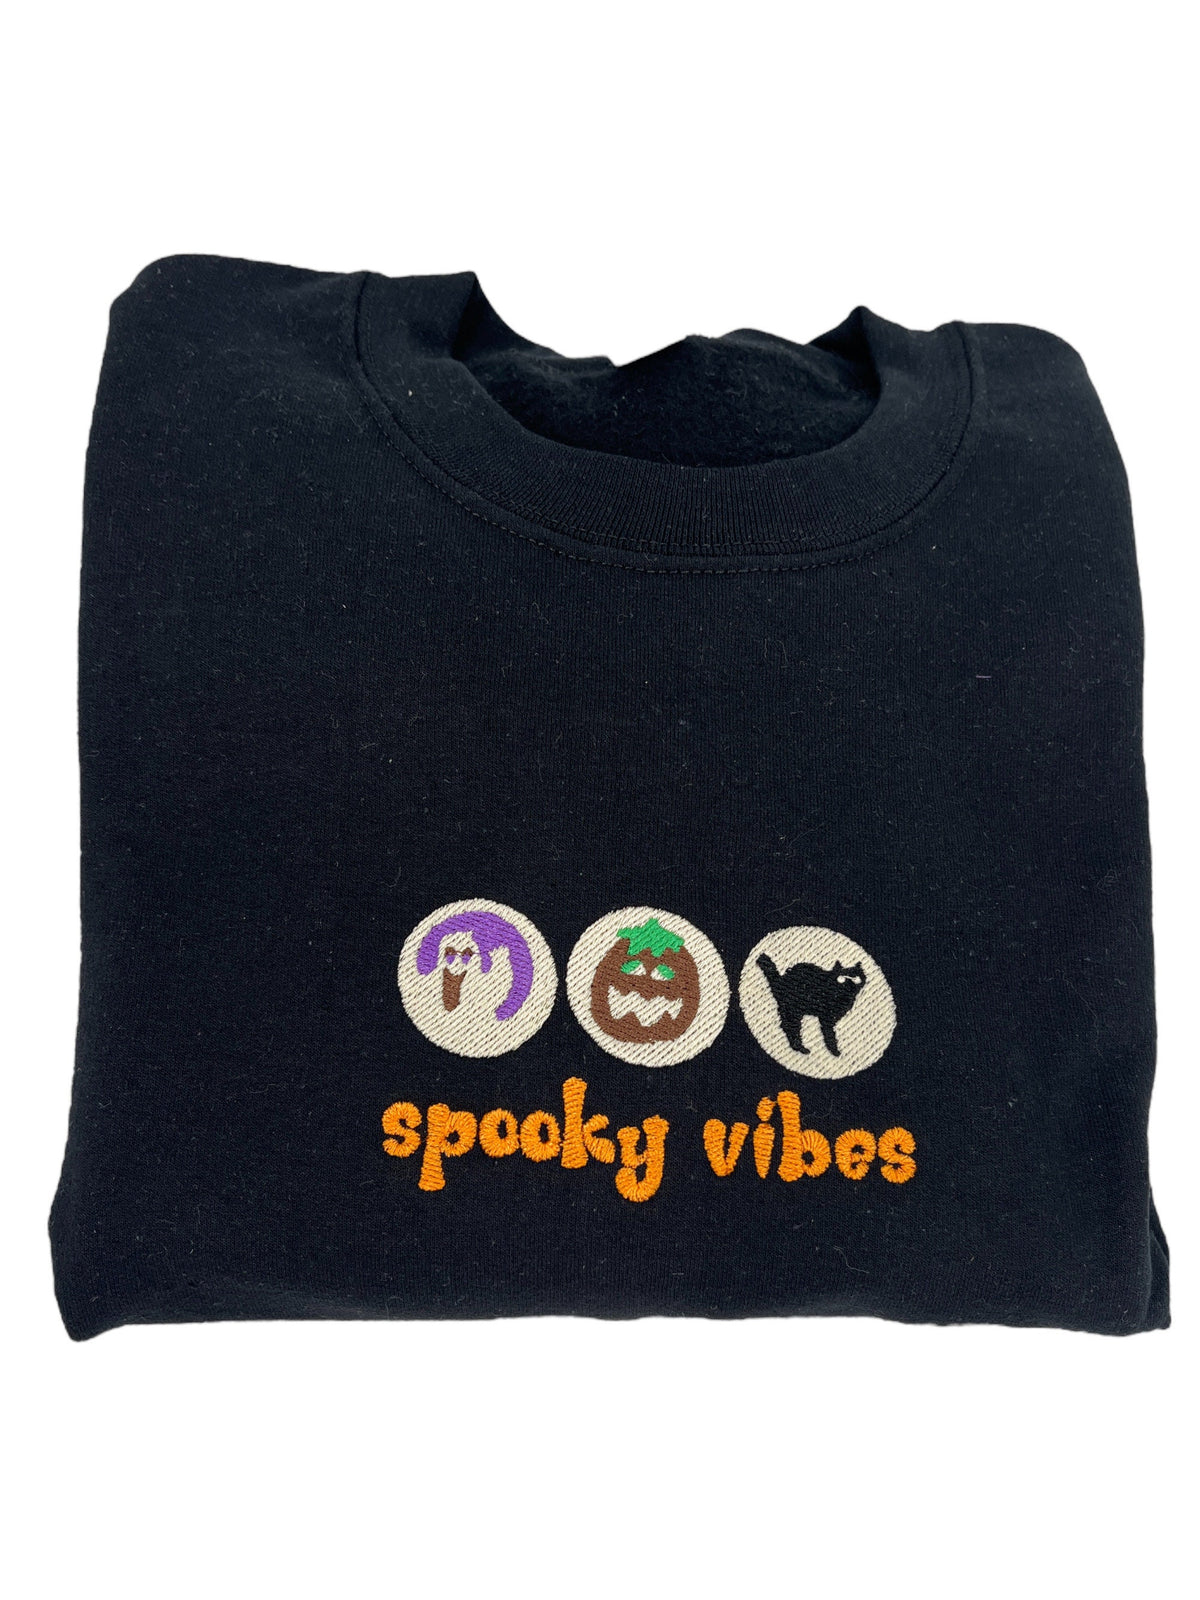 Halloween Cookies Boo Embroidered Sweatshirt, Spooky Season Sweatshirt, Ghost Pumpkin Shirt